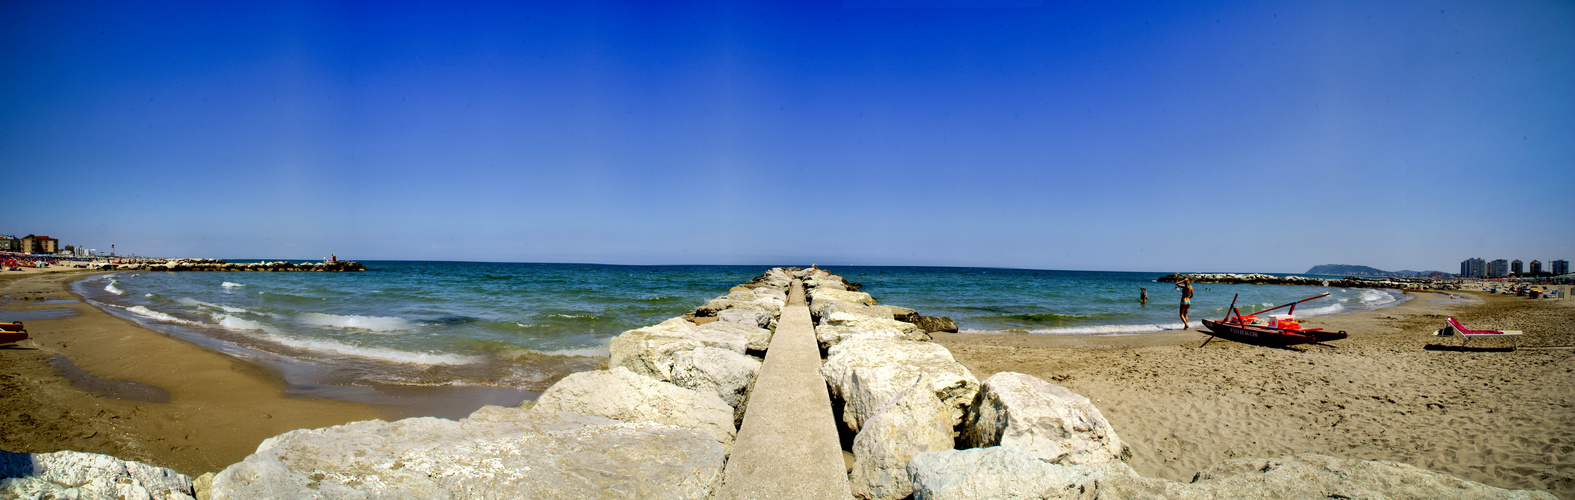 Panorama Strand Misano Adriatico